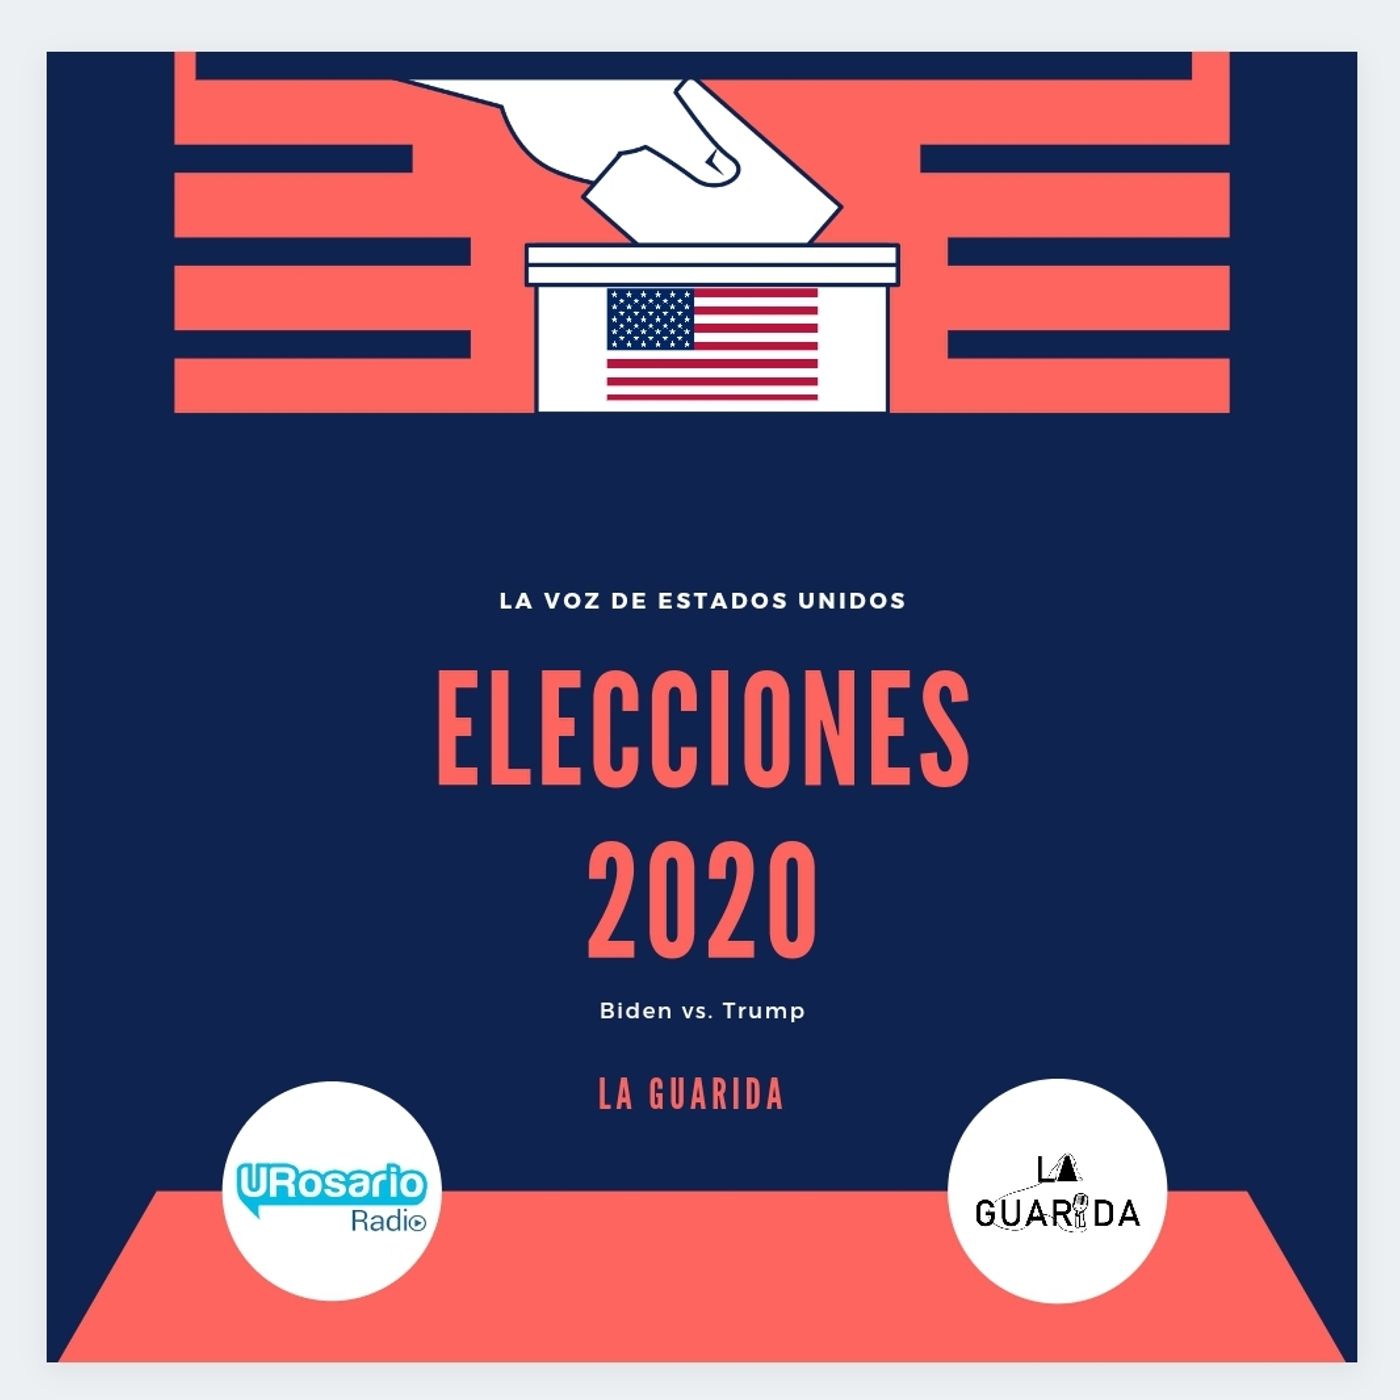 La voz de Estados Unidos Elecciones 2020